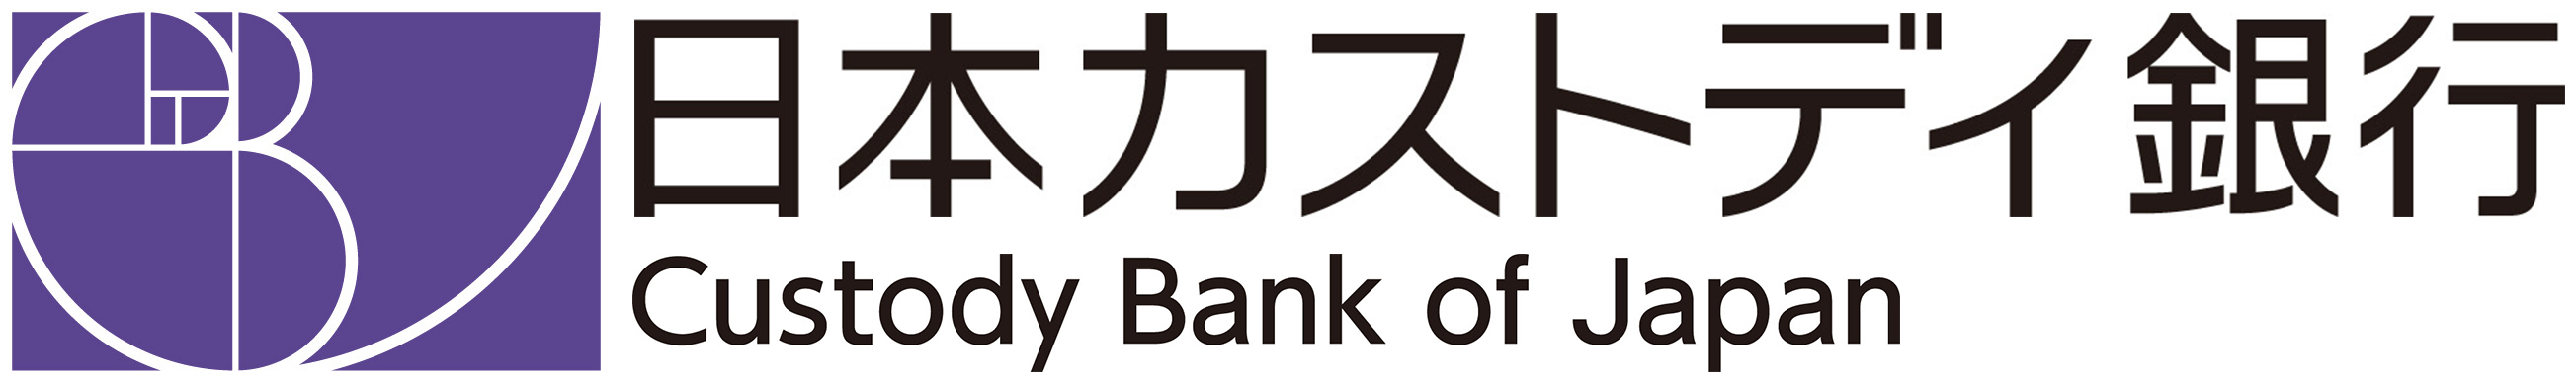 株式会社日本カストディ銀行